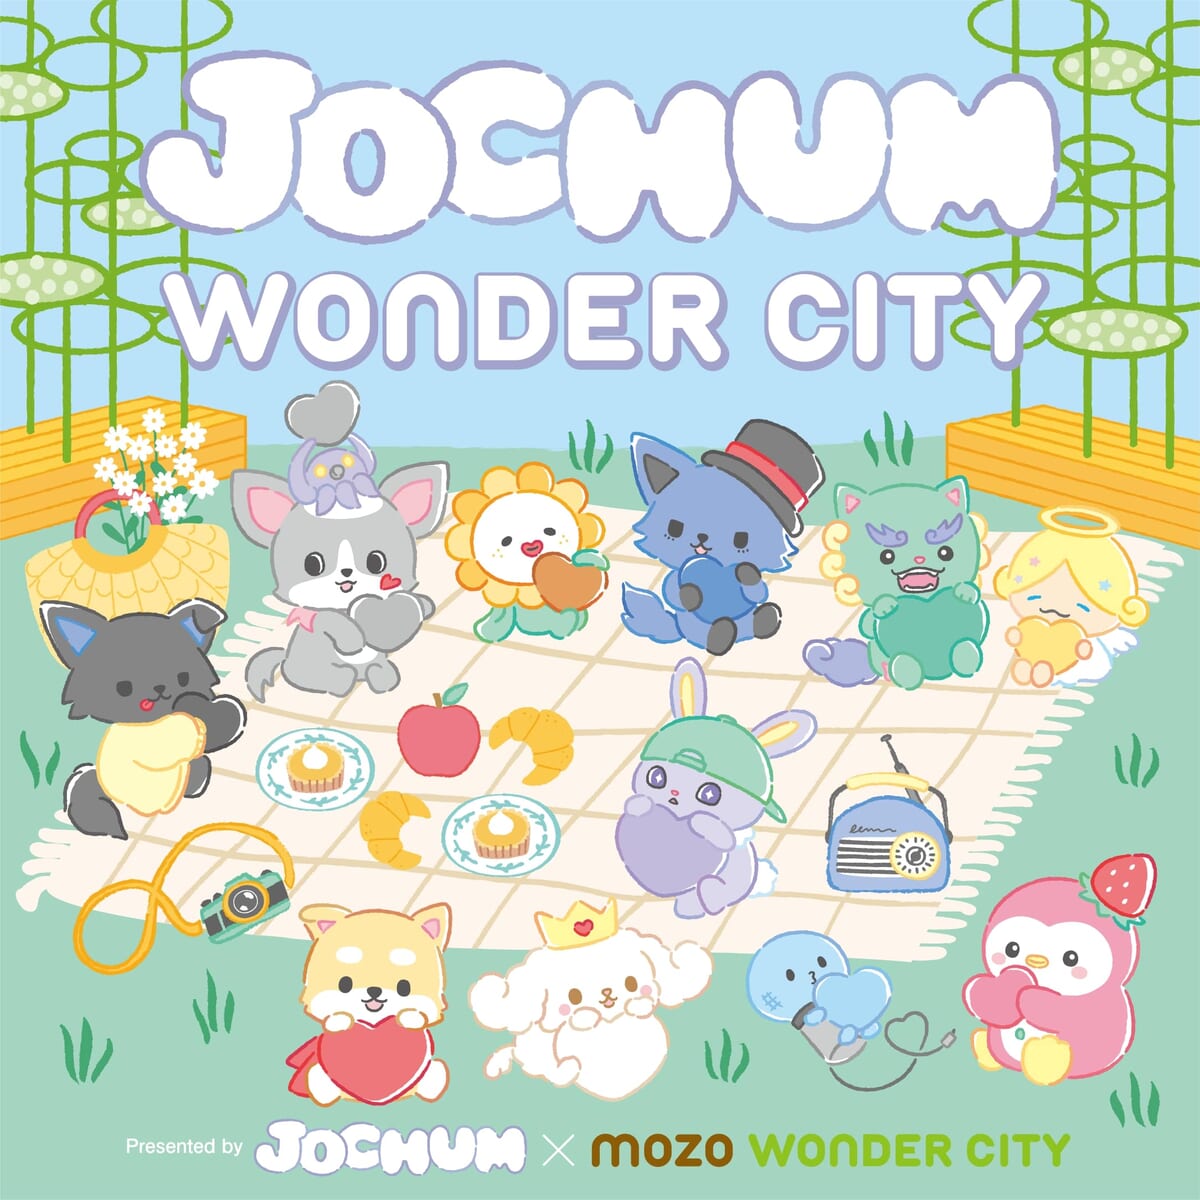 名古屋 mozo ワンダーシティ『JOCHUM×WONDER CITY』